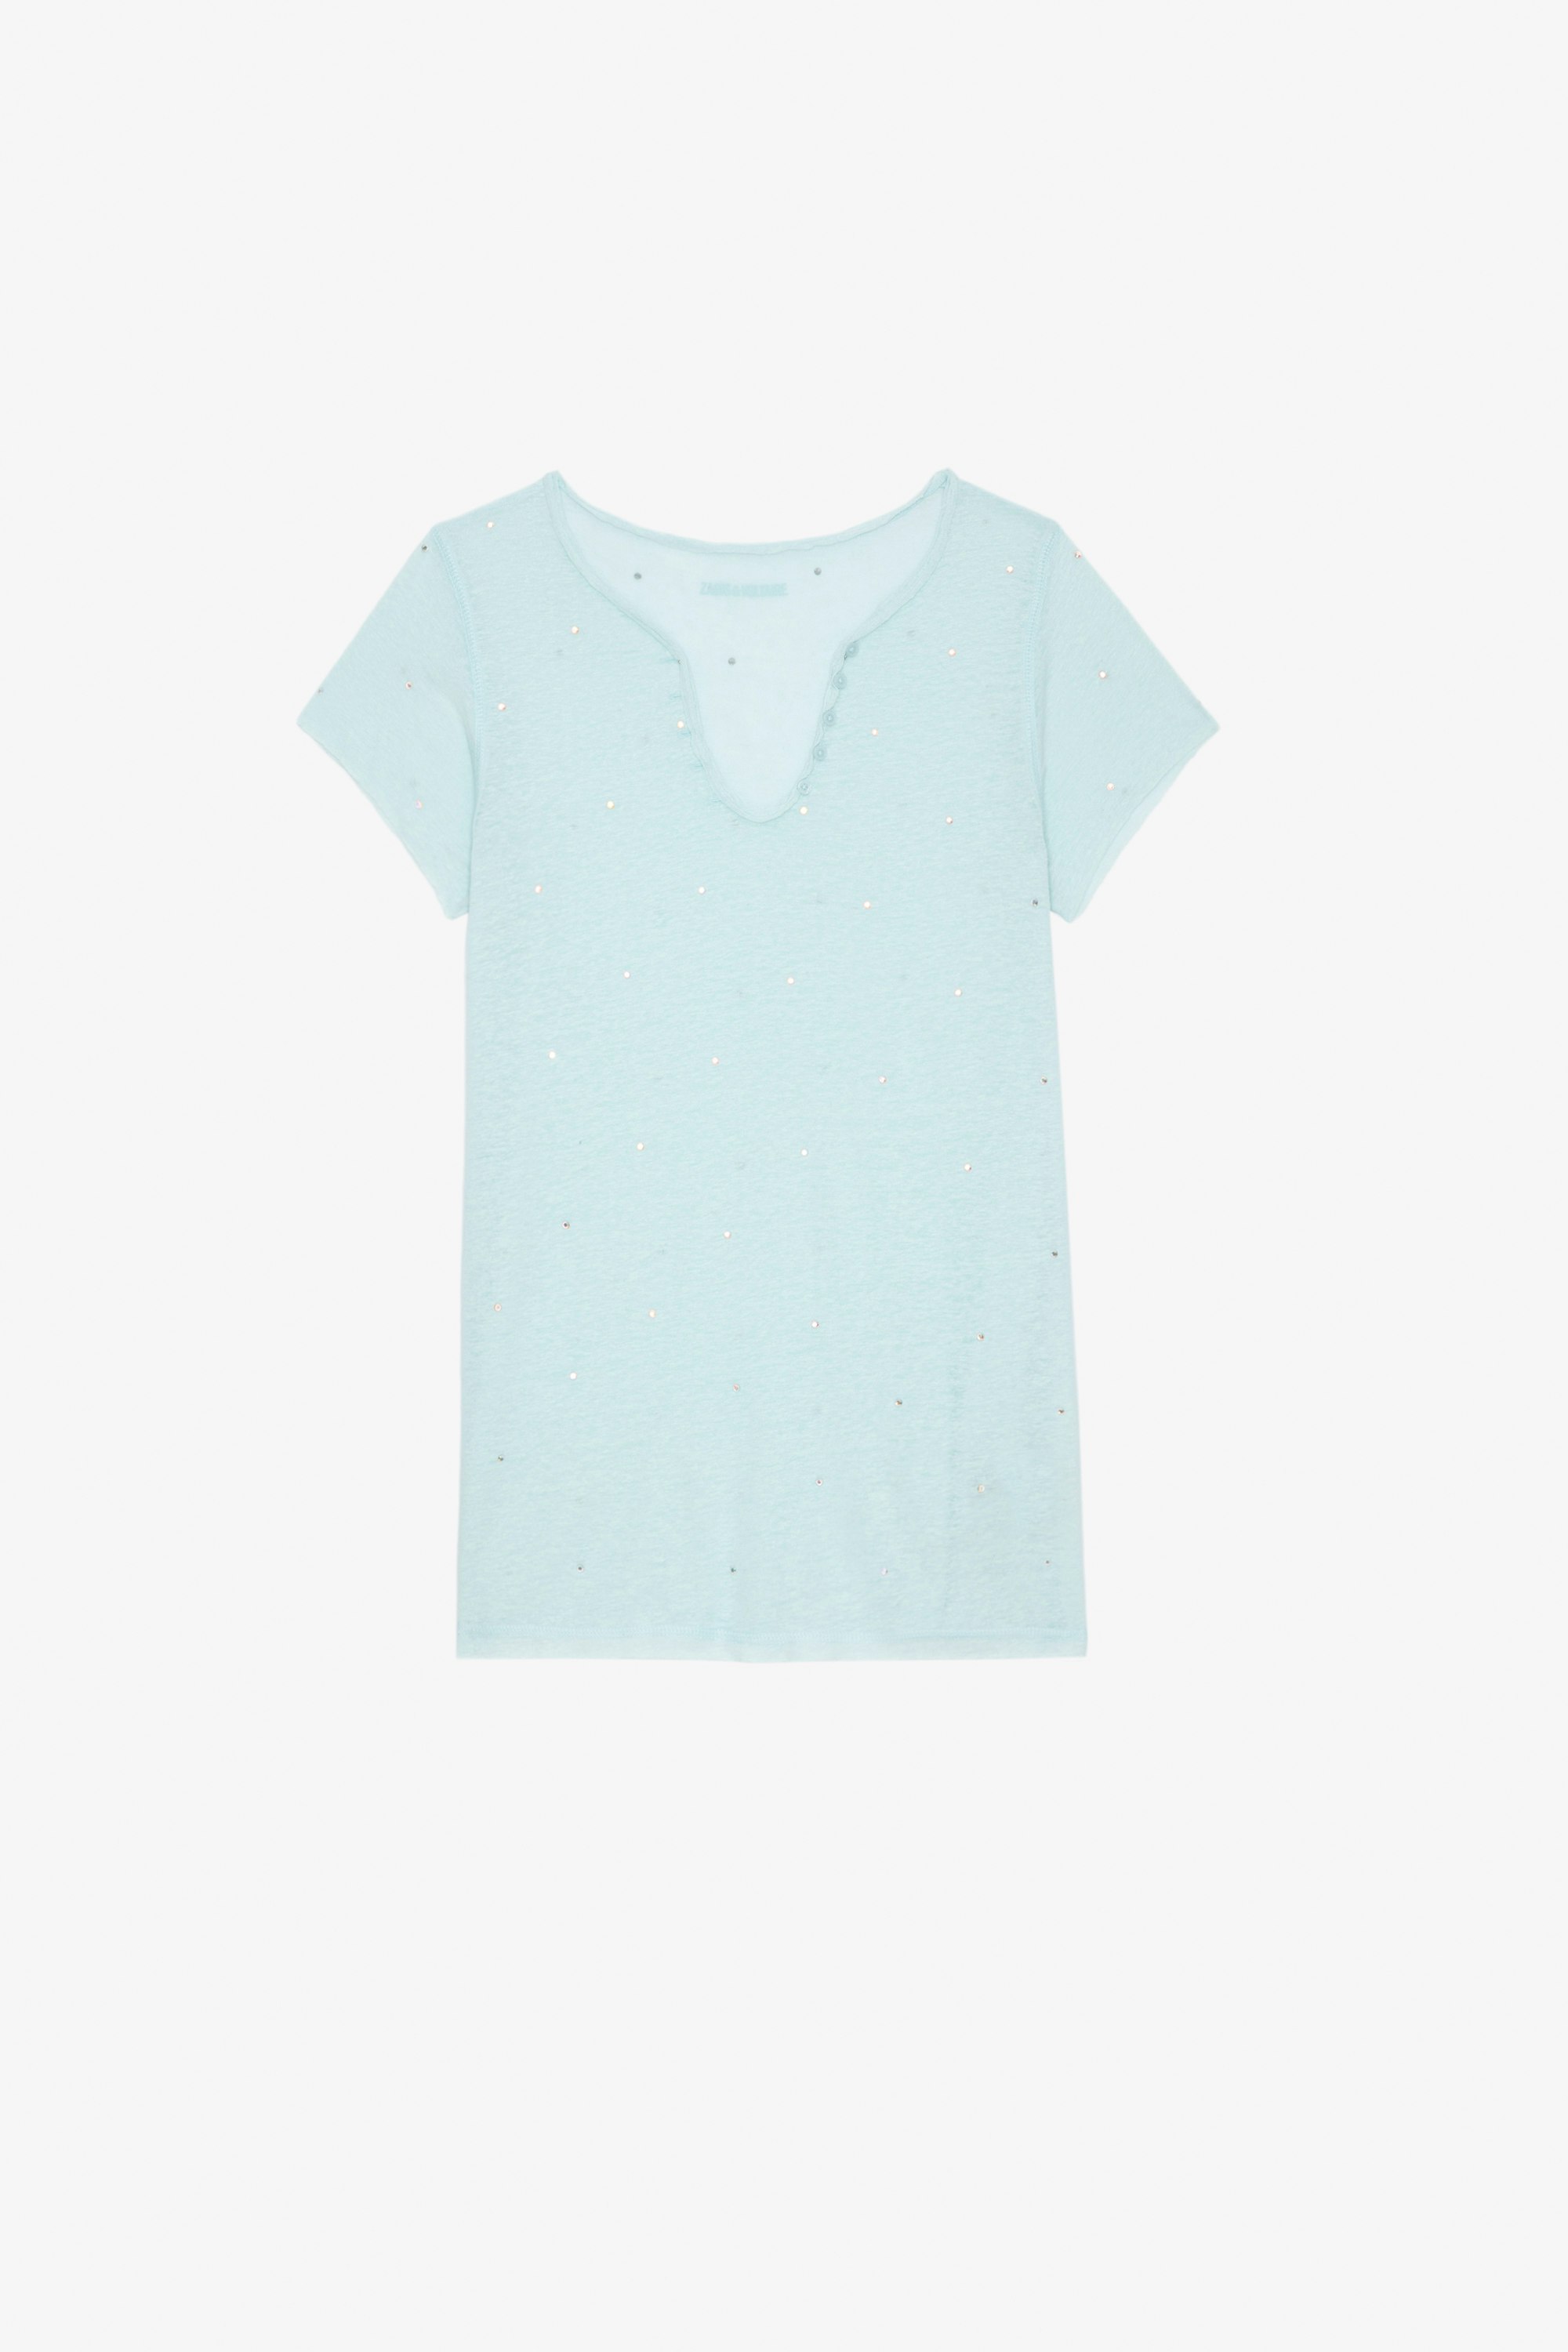 Henley T-Shirt Women's sky-blue rhinestone-studded Henley T-shirt